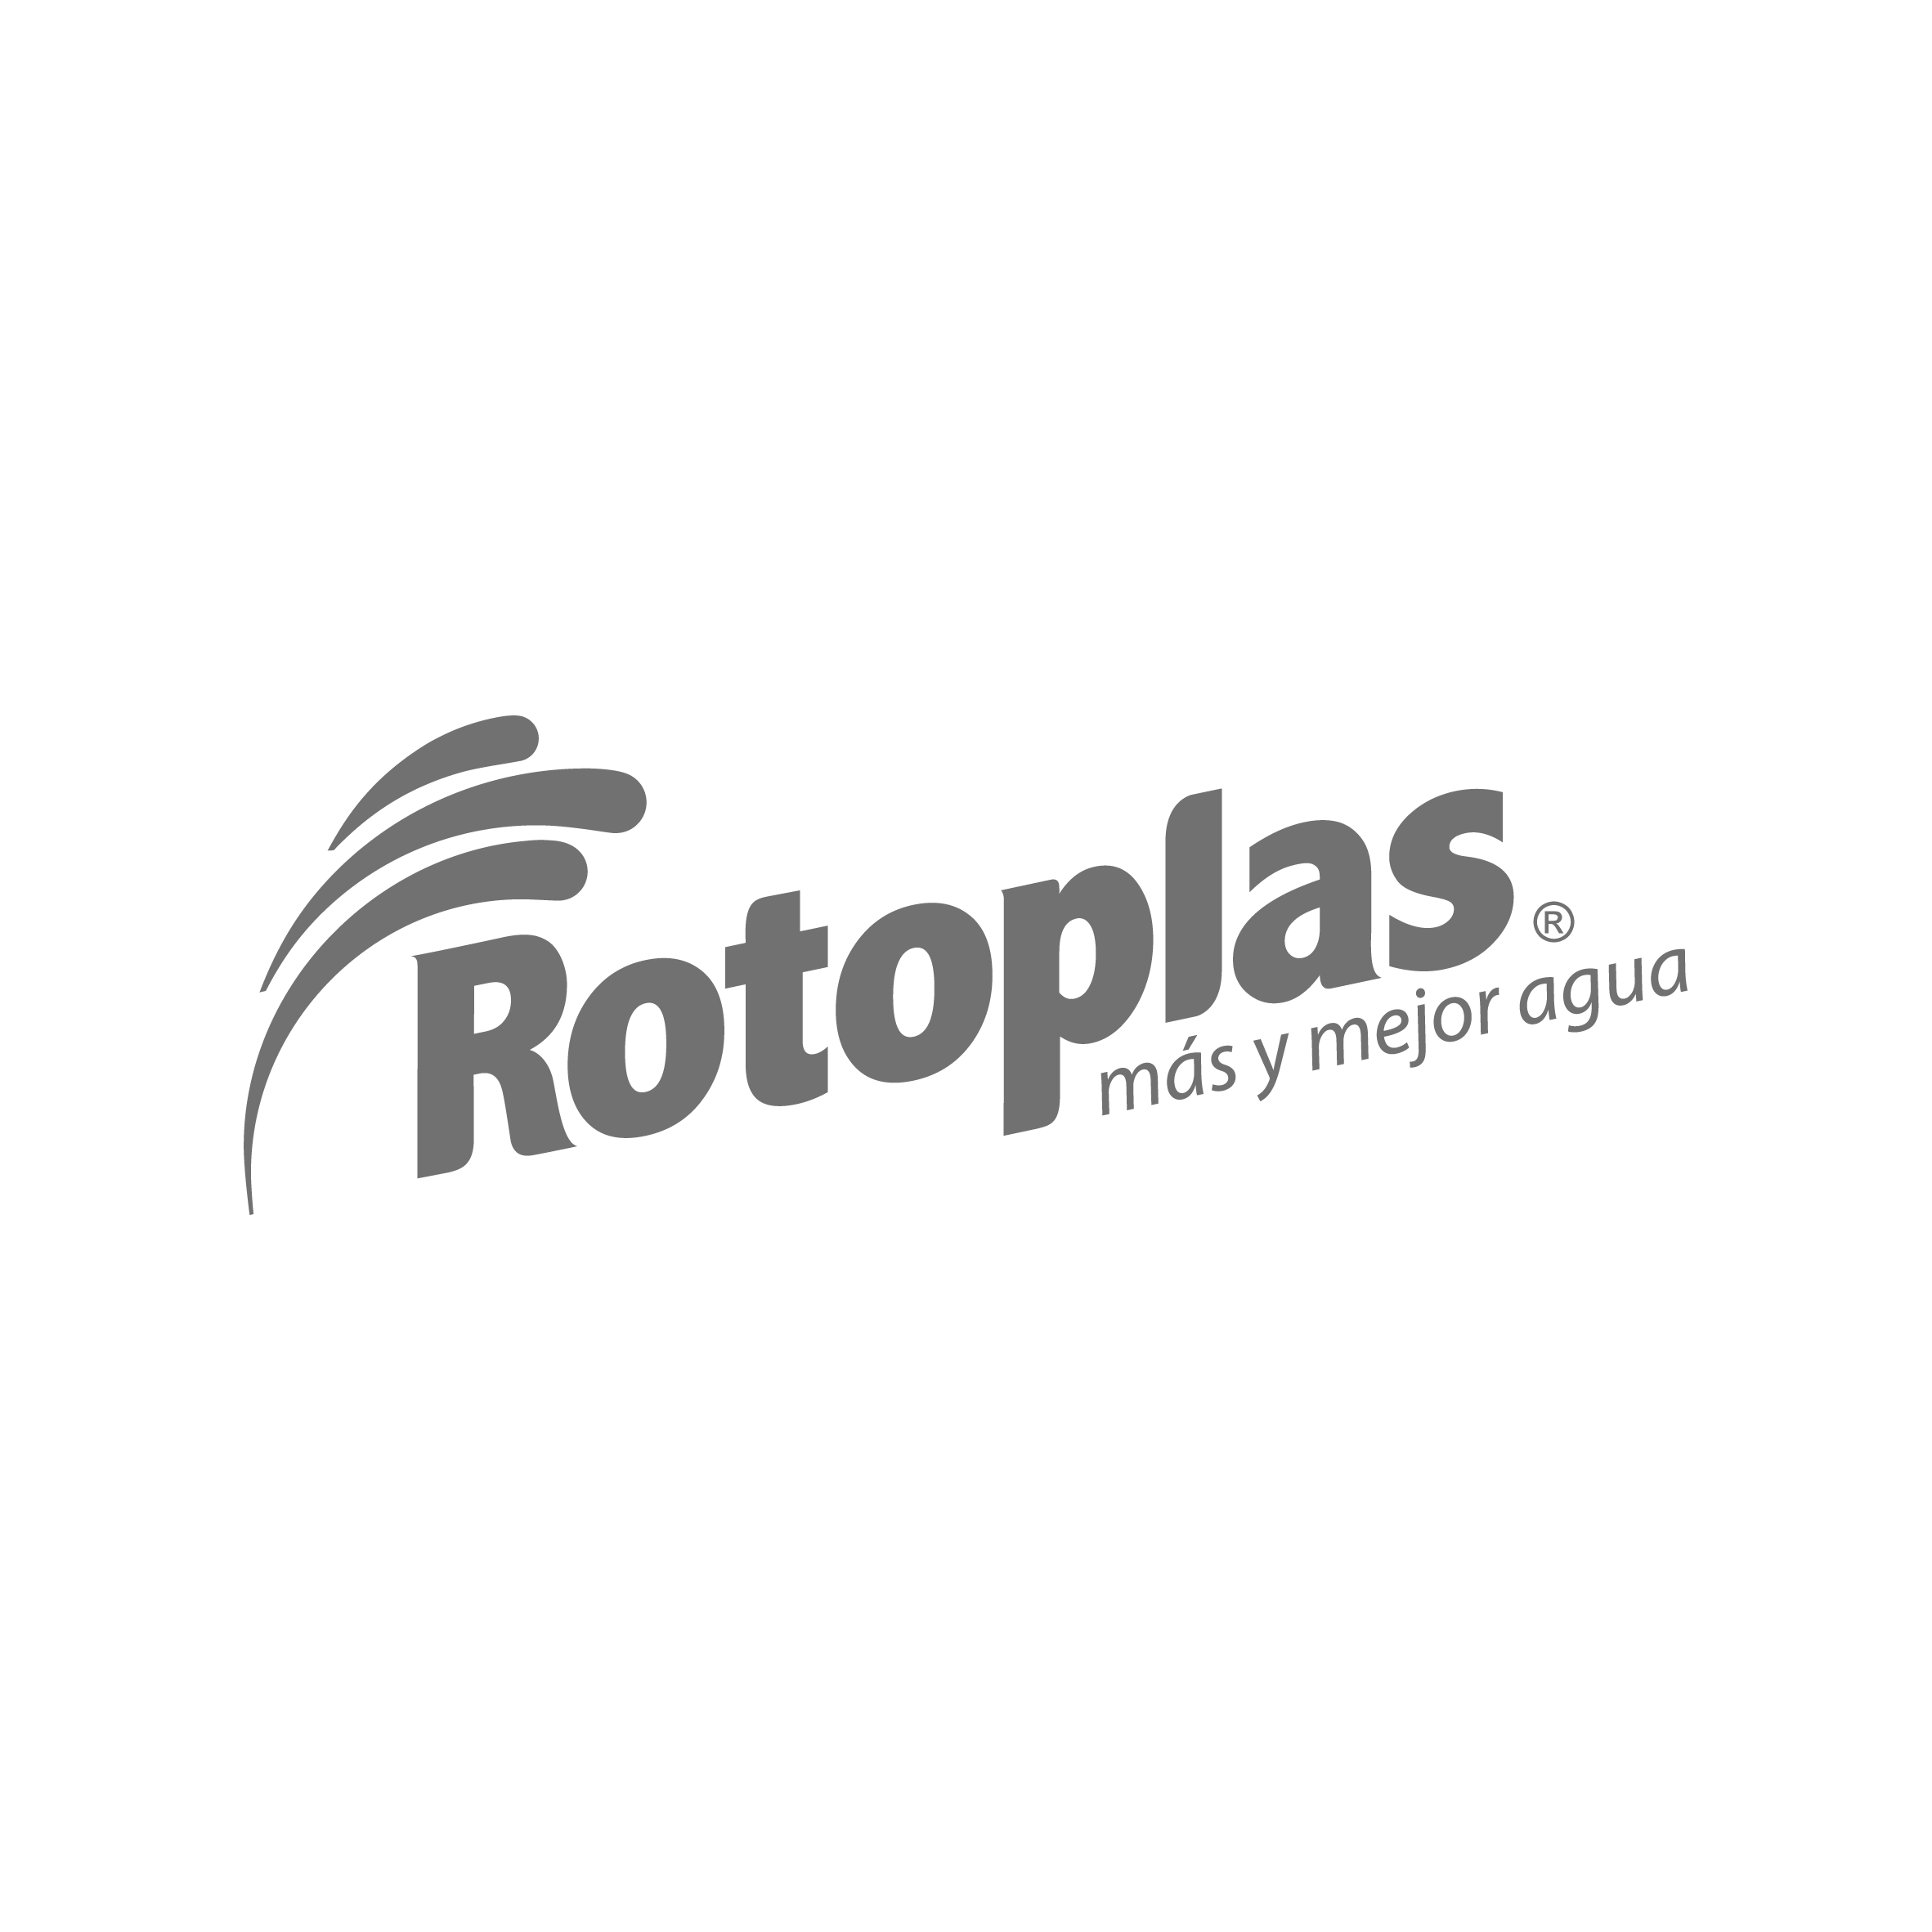 rotoplas